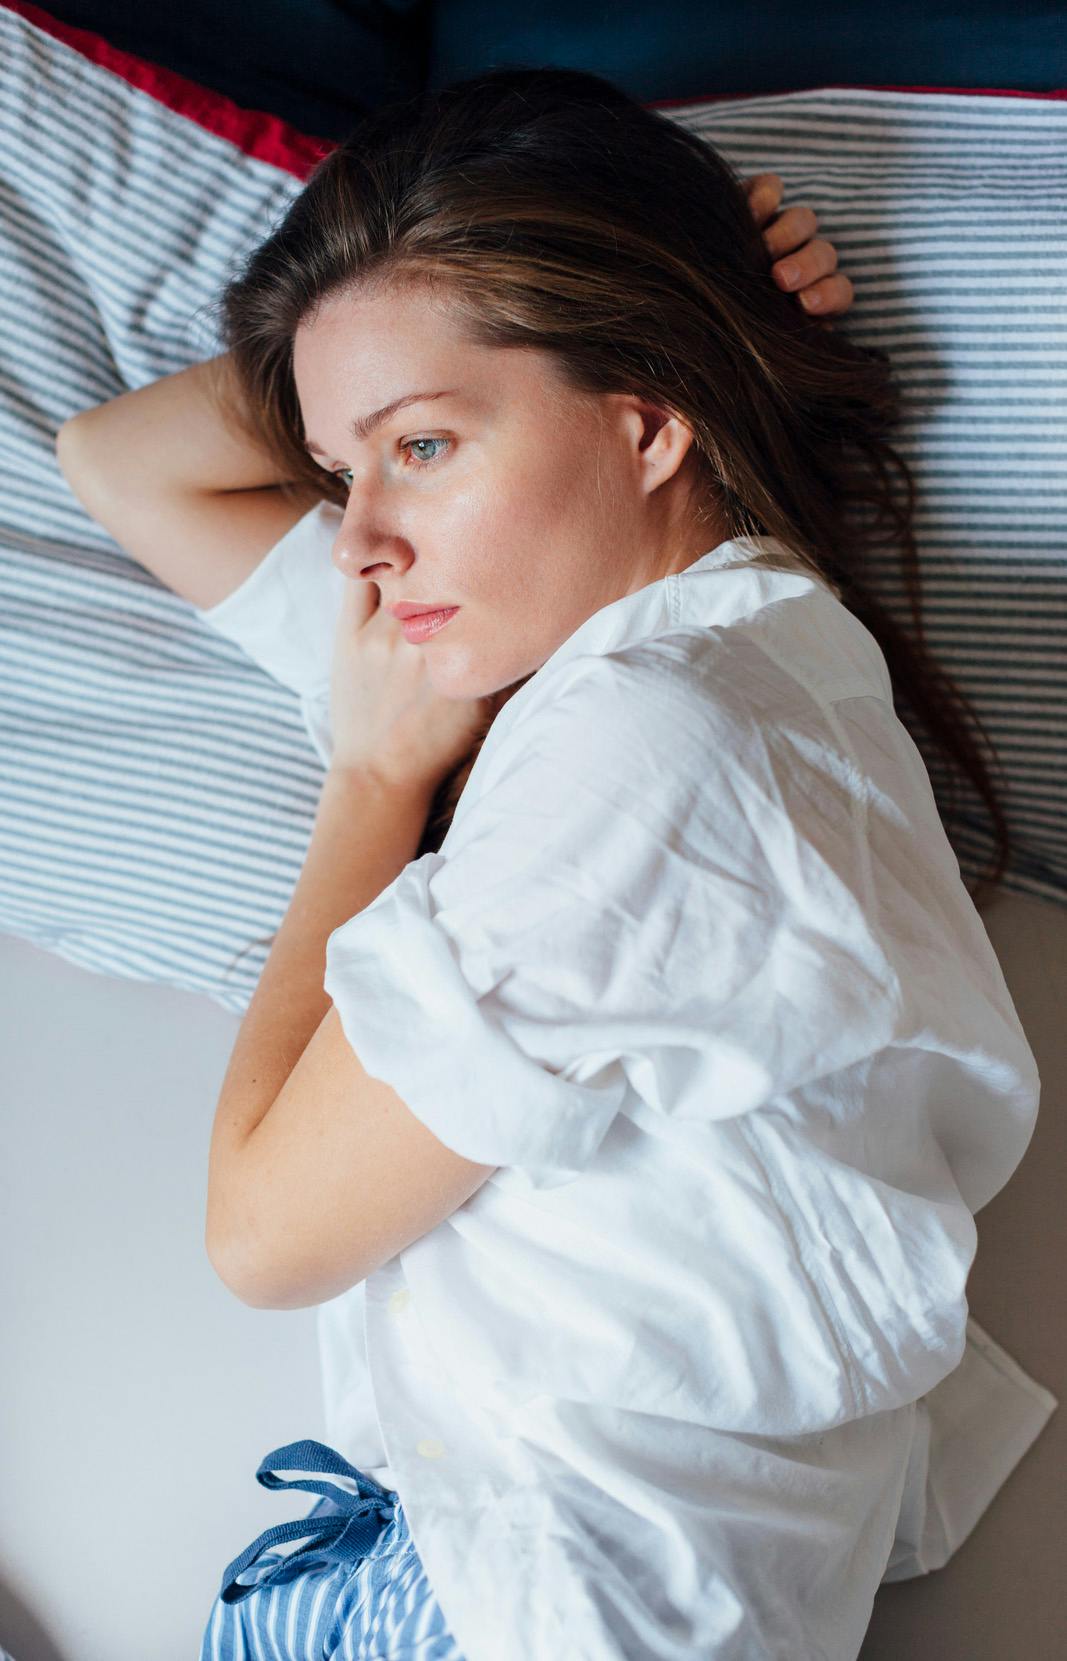 Mujer acostada en cama con gripe, incapaz de hacer nada